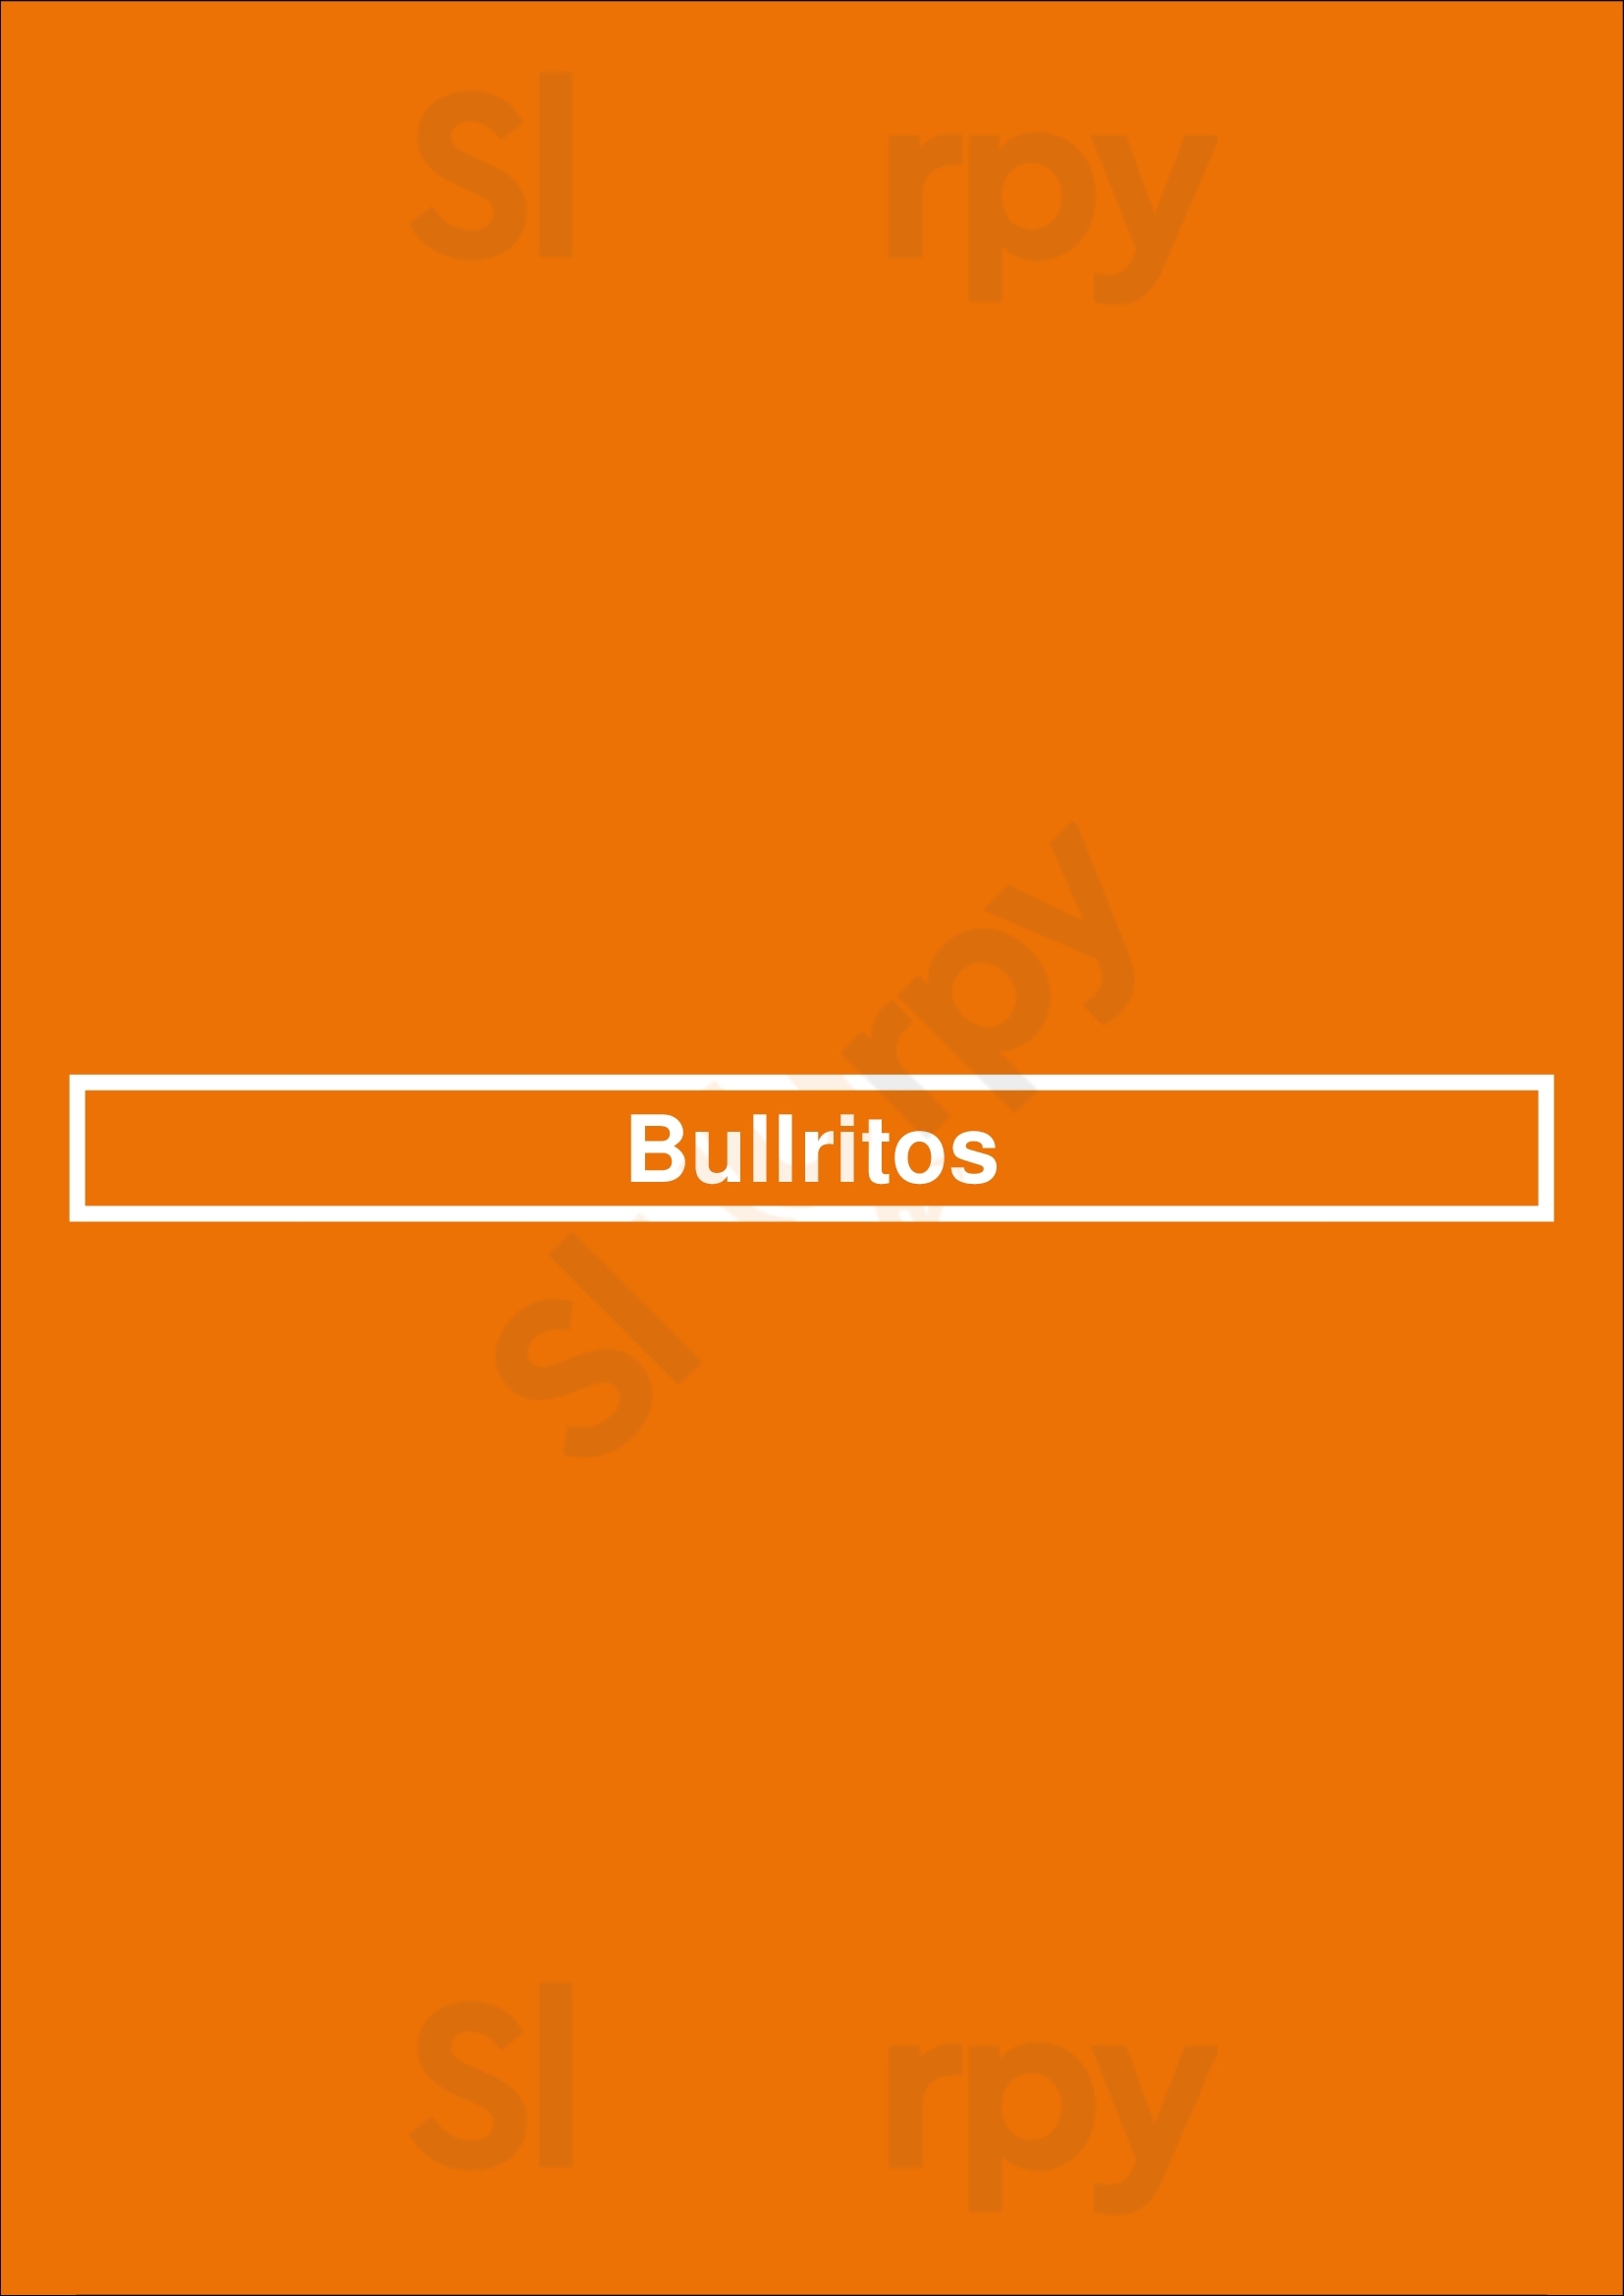 Bullritos Houston Menu - 1